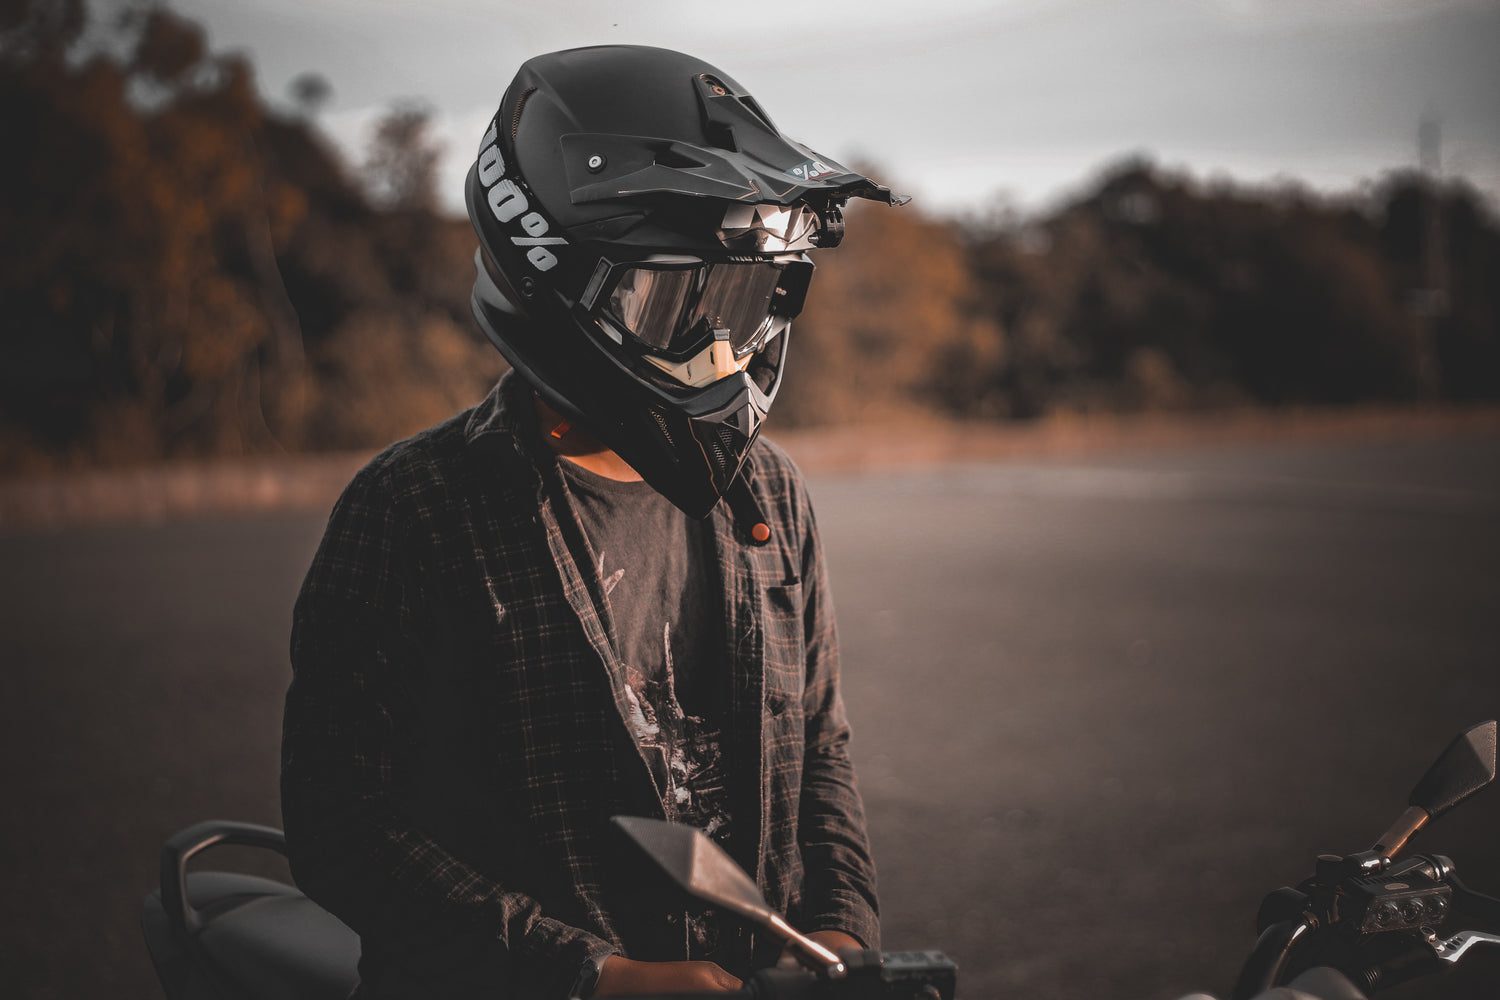 Wear proper motorcycle gear